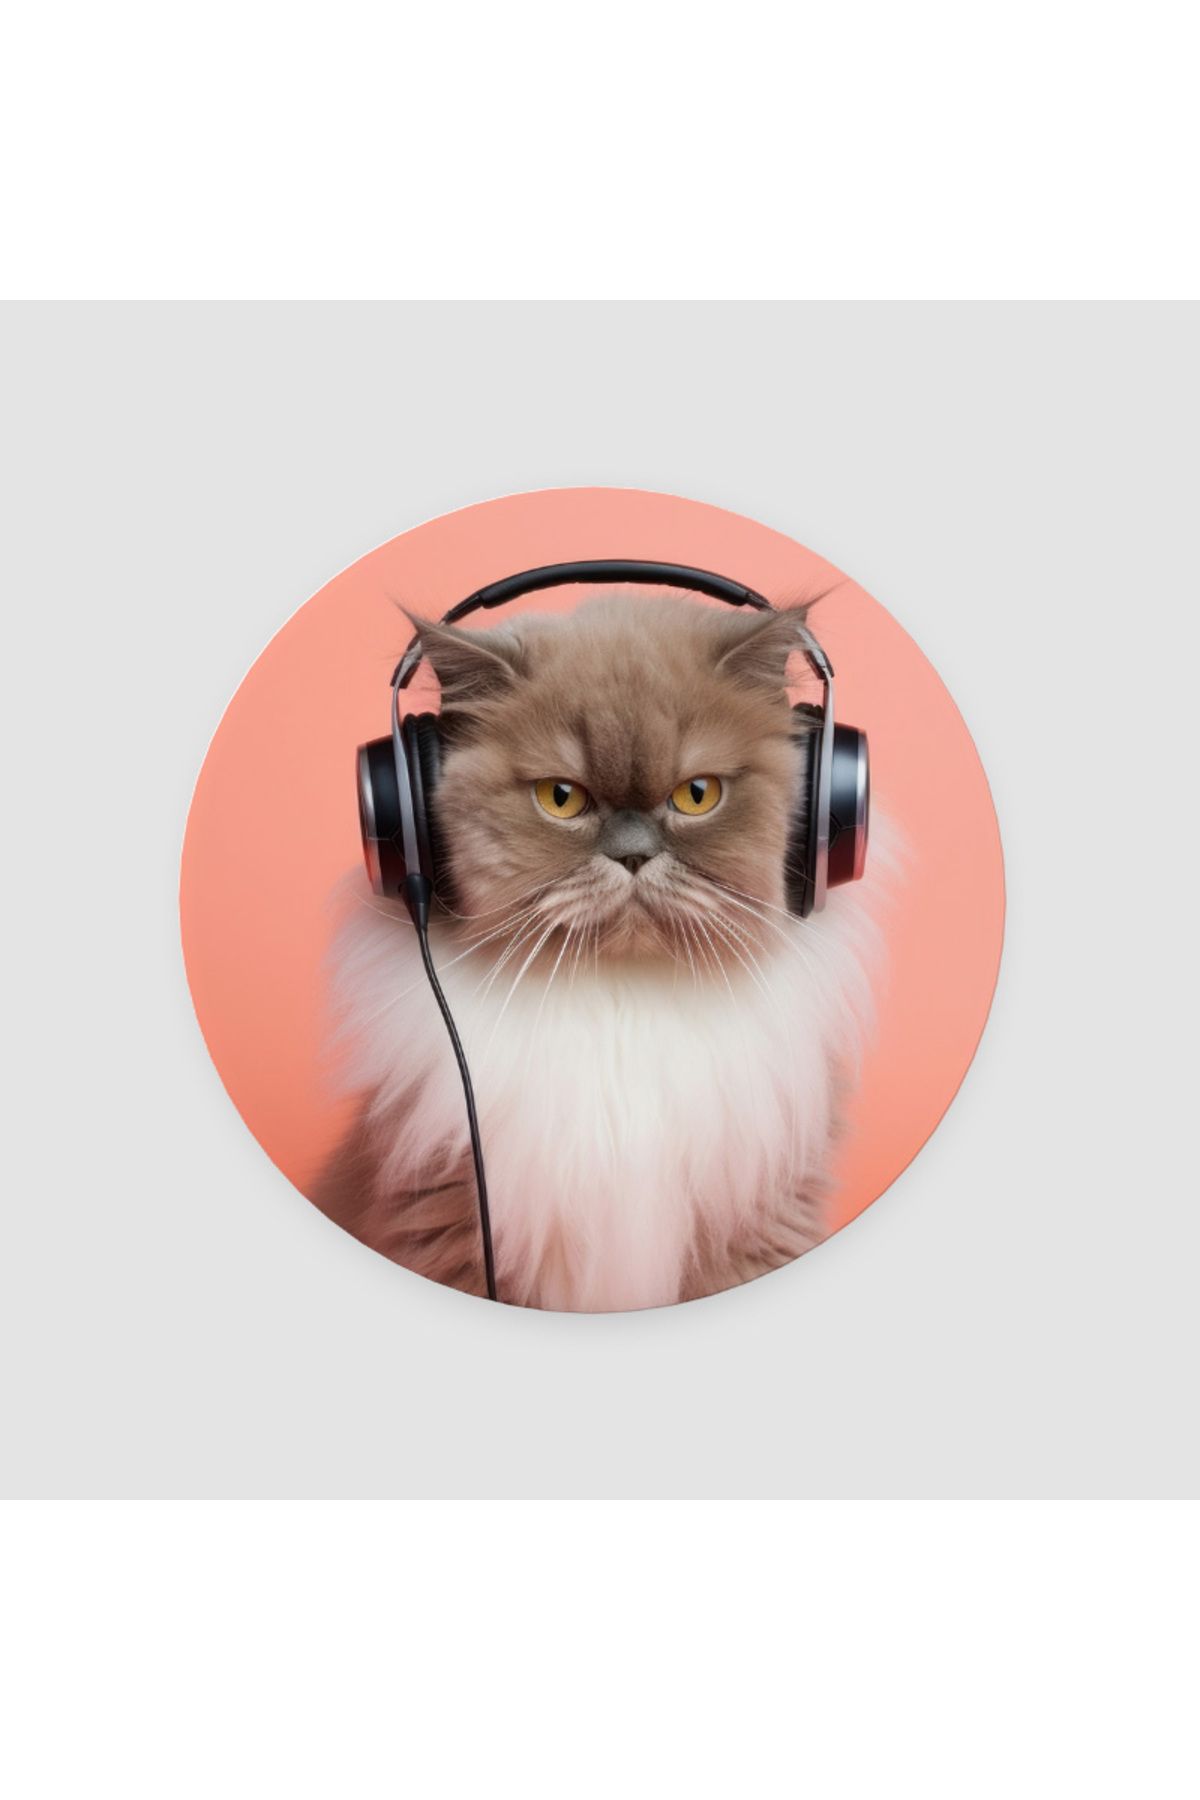 MoonArtica Müzik Tutkunu Kedi Tasarımlı 4lü Yuvarlak Bardak Altlığı